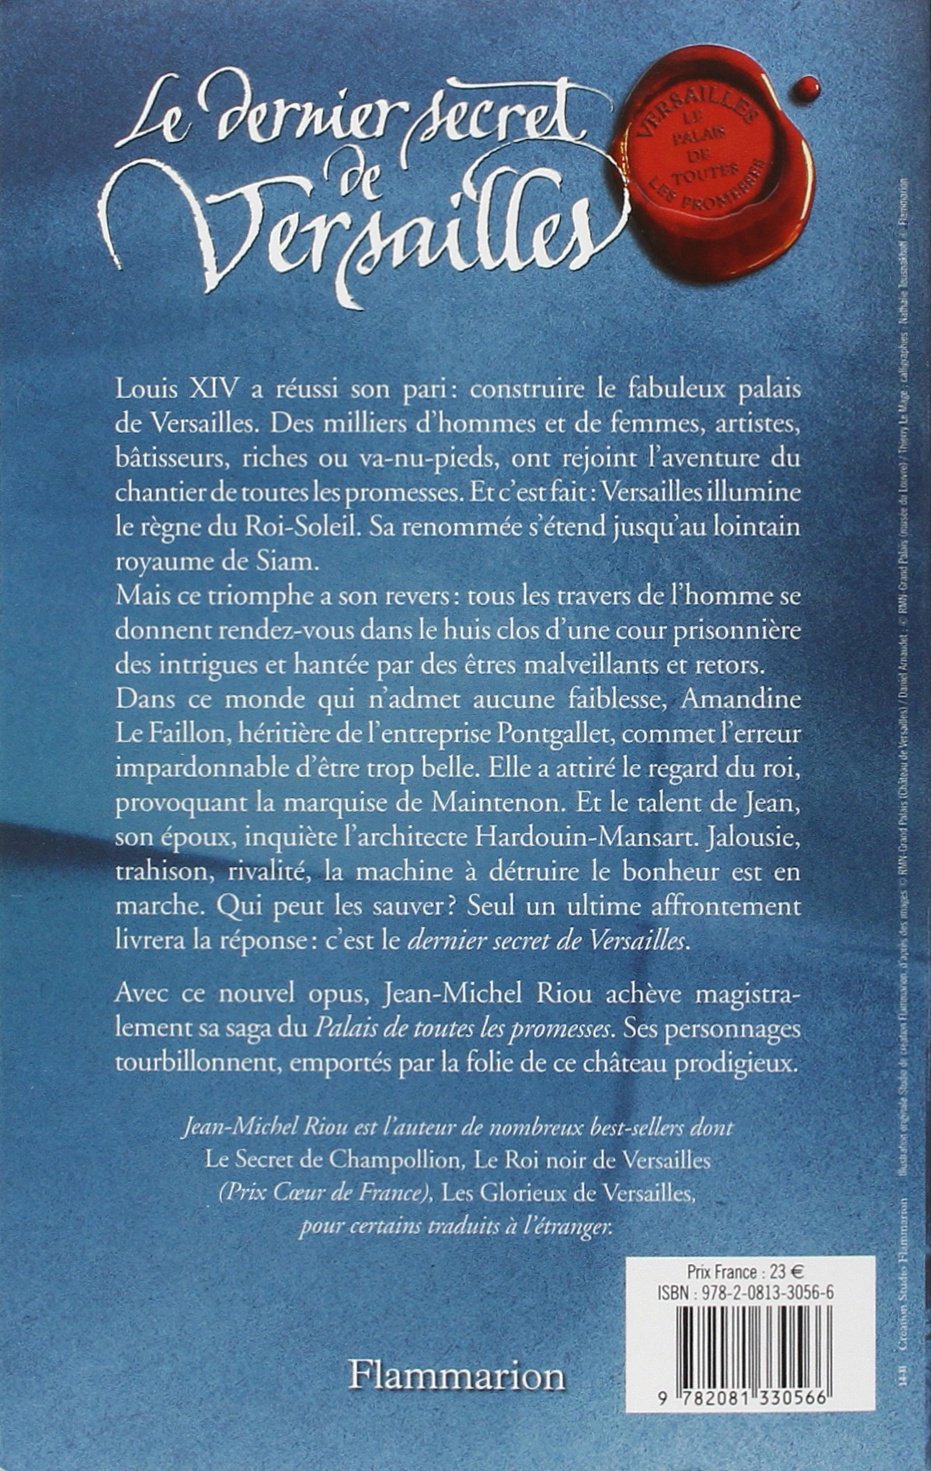 Le dernier secret de Versailles # 4 : Le palais de toutes les promesses (Jean-Michel Riou)